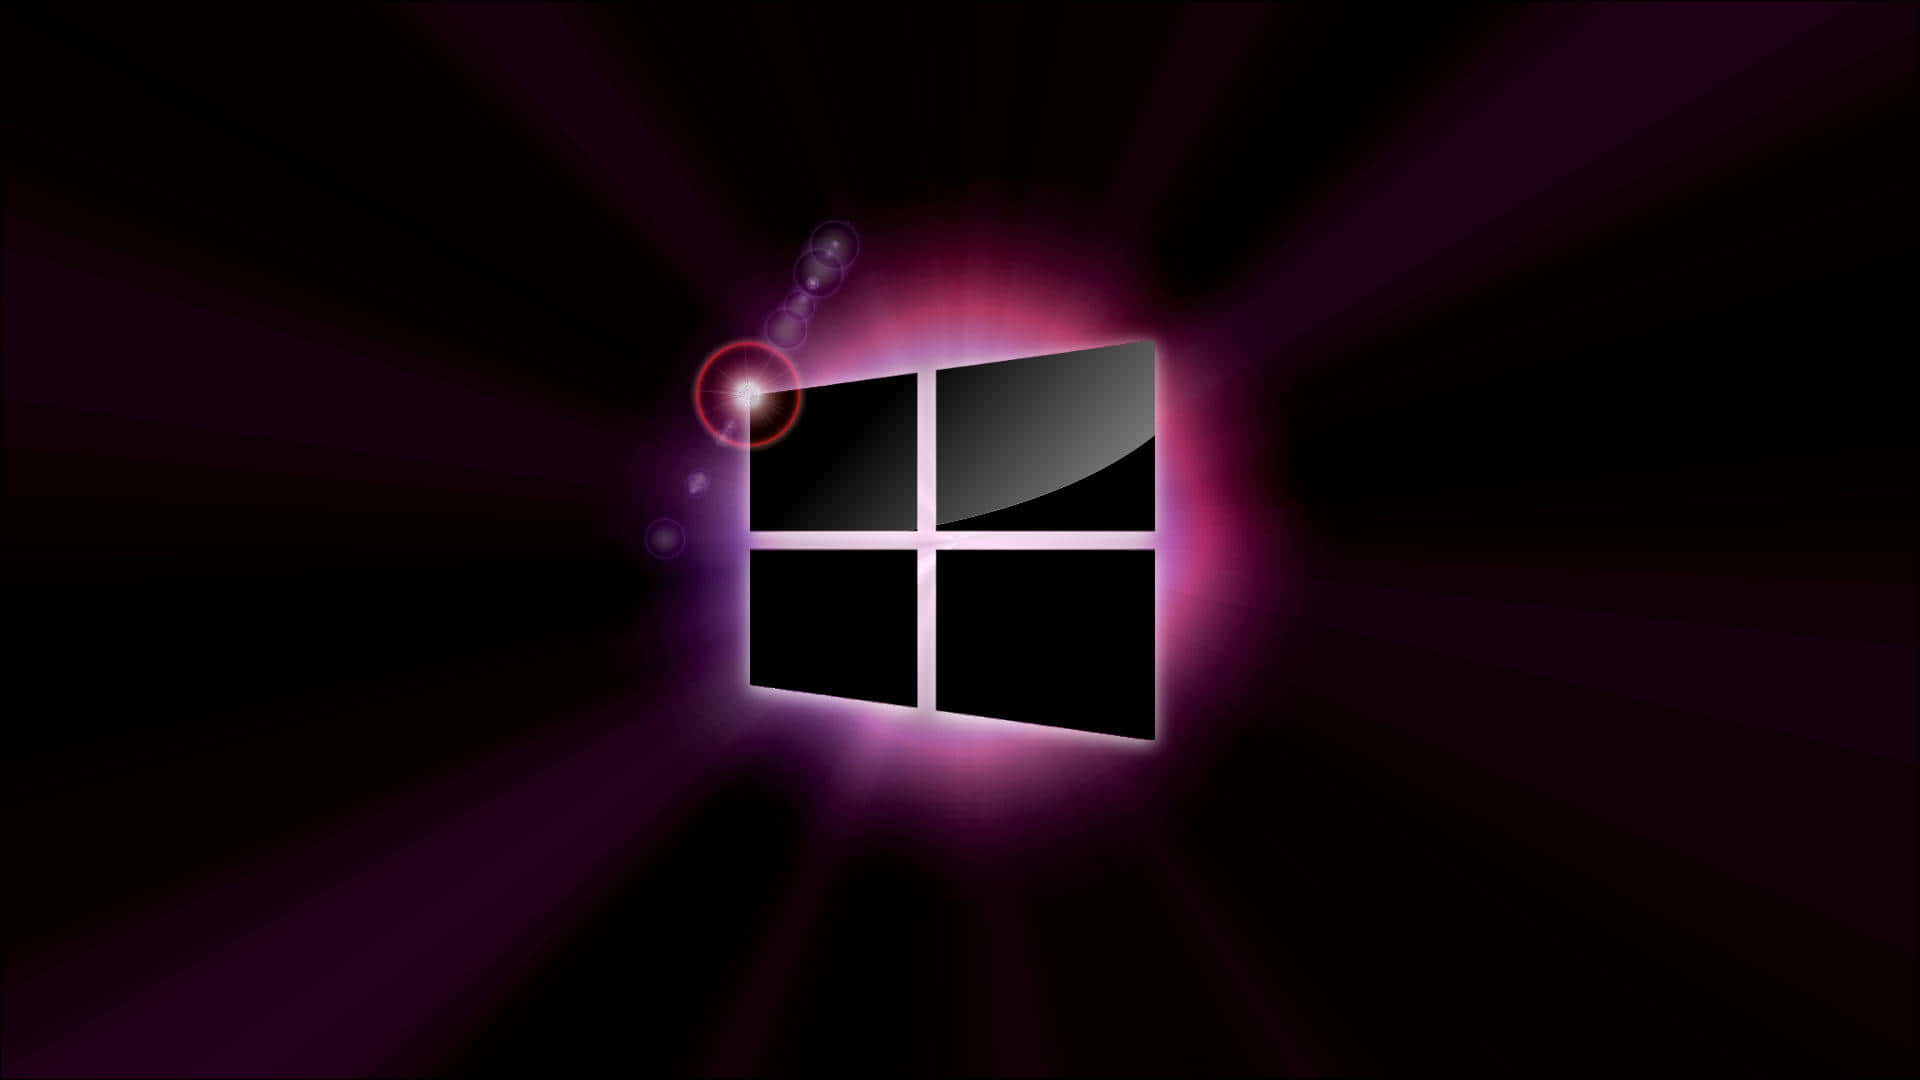 Windows8 Hintergrund Mit Einer Auflösung Von 1920 X 1080